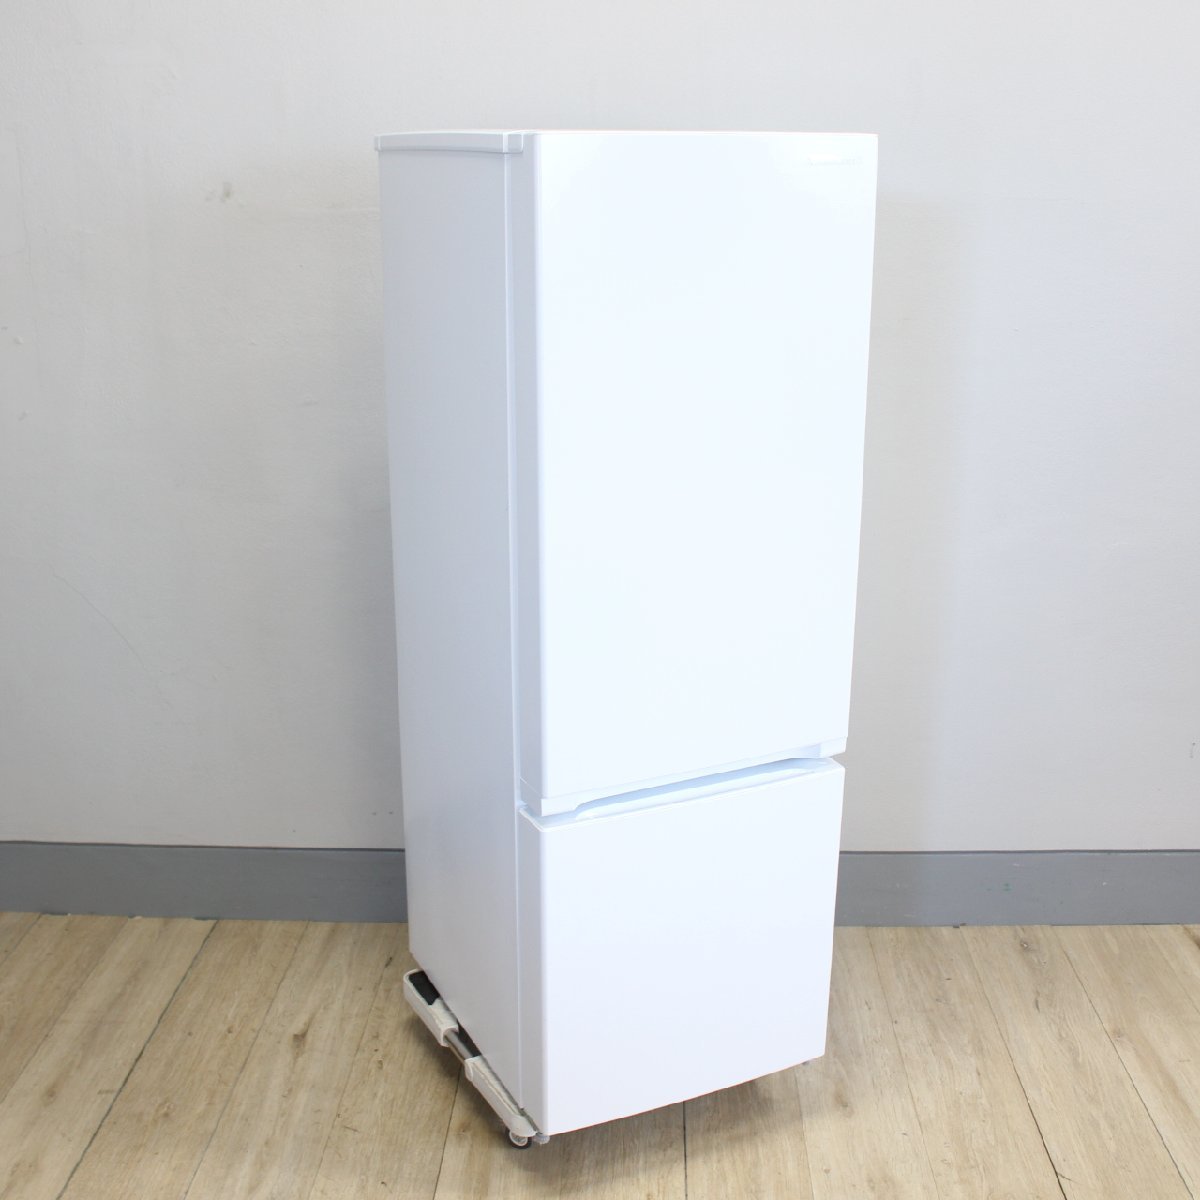 横浜市青葉区にて ヤマダセレクト 冷蔵庫 YRZF17H1 2020年製 を出張買取させて頂きました。